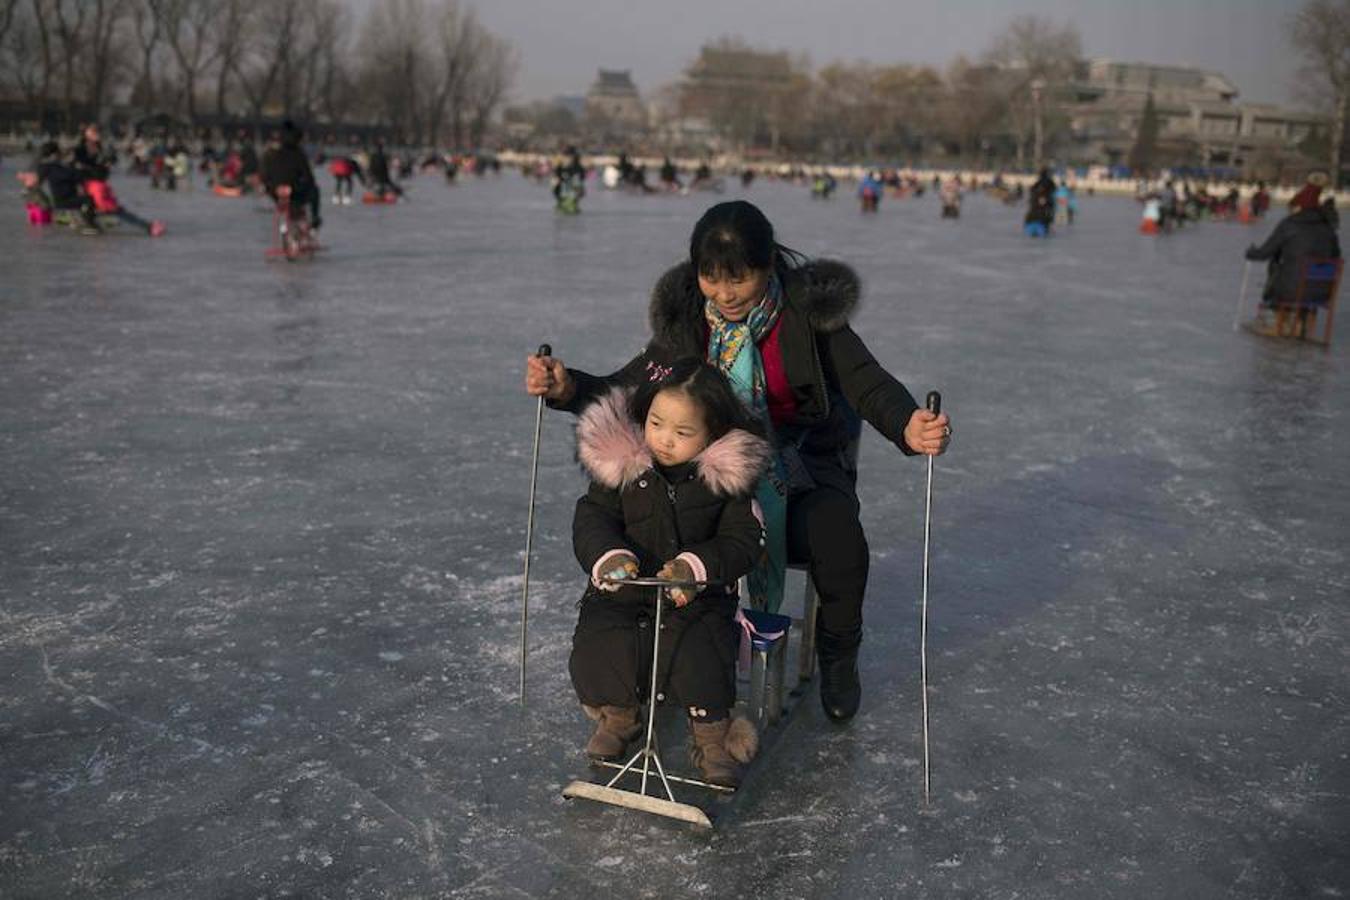 Familias disfrutan del patinaje sobre el congelado lago Hou Hai en Benijing antes del Año Nuevo Lunar. China marcará el comienzo del Año Nuevo Lunar el 16 de febrero, marcando el comienzo del Año del Perro.